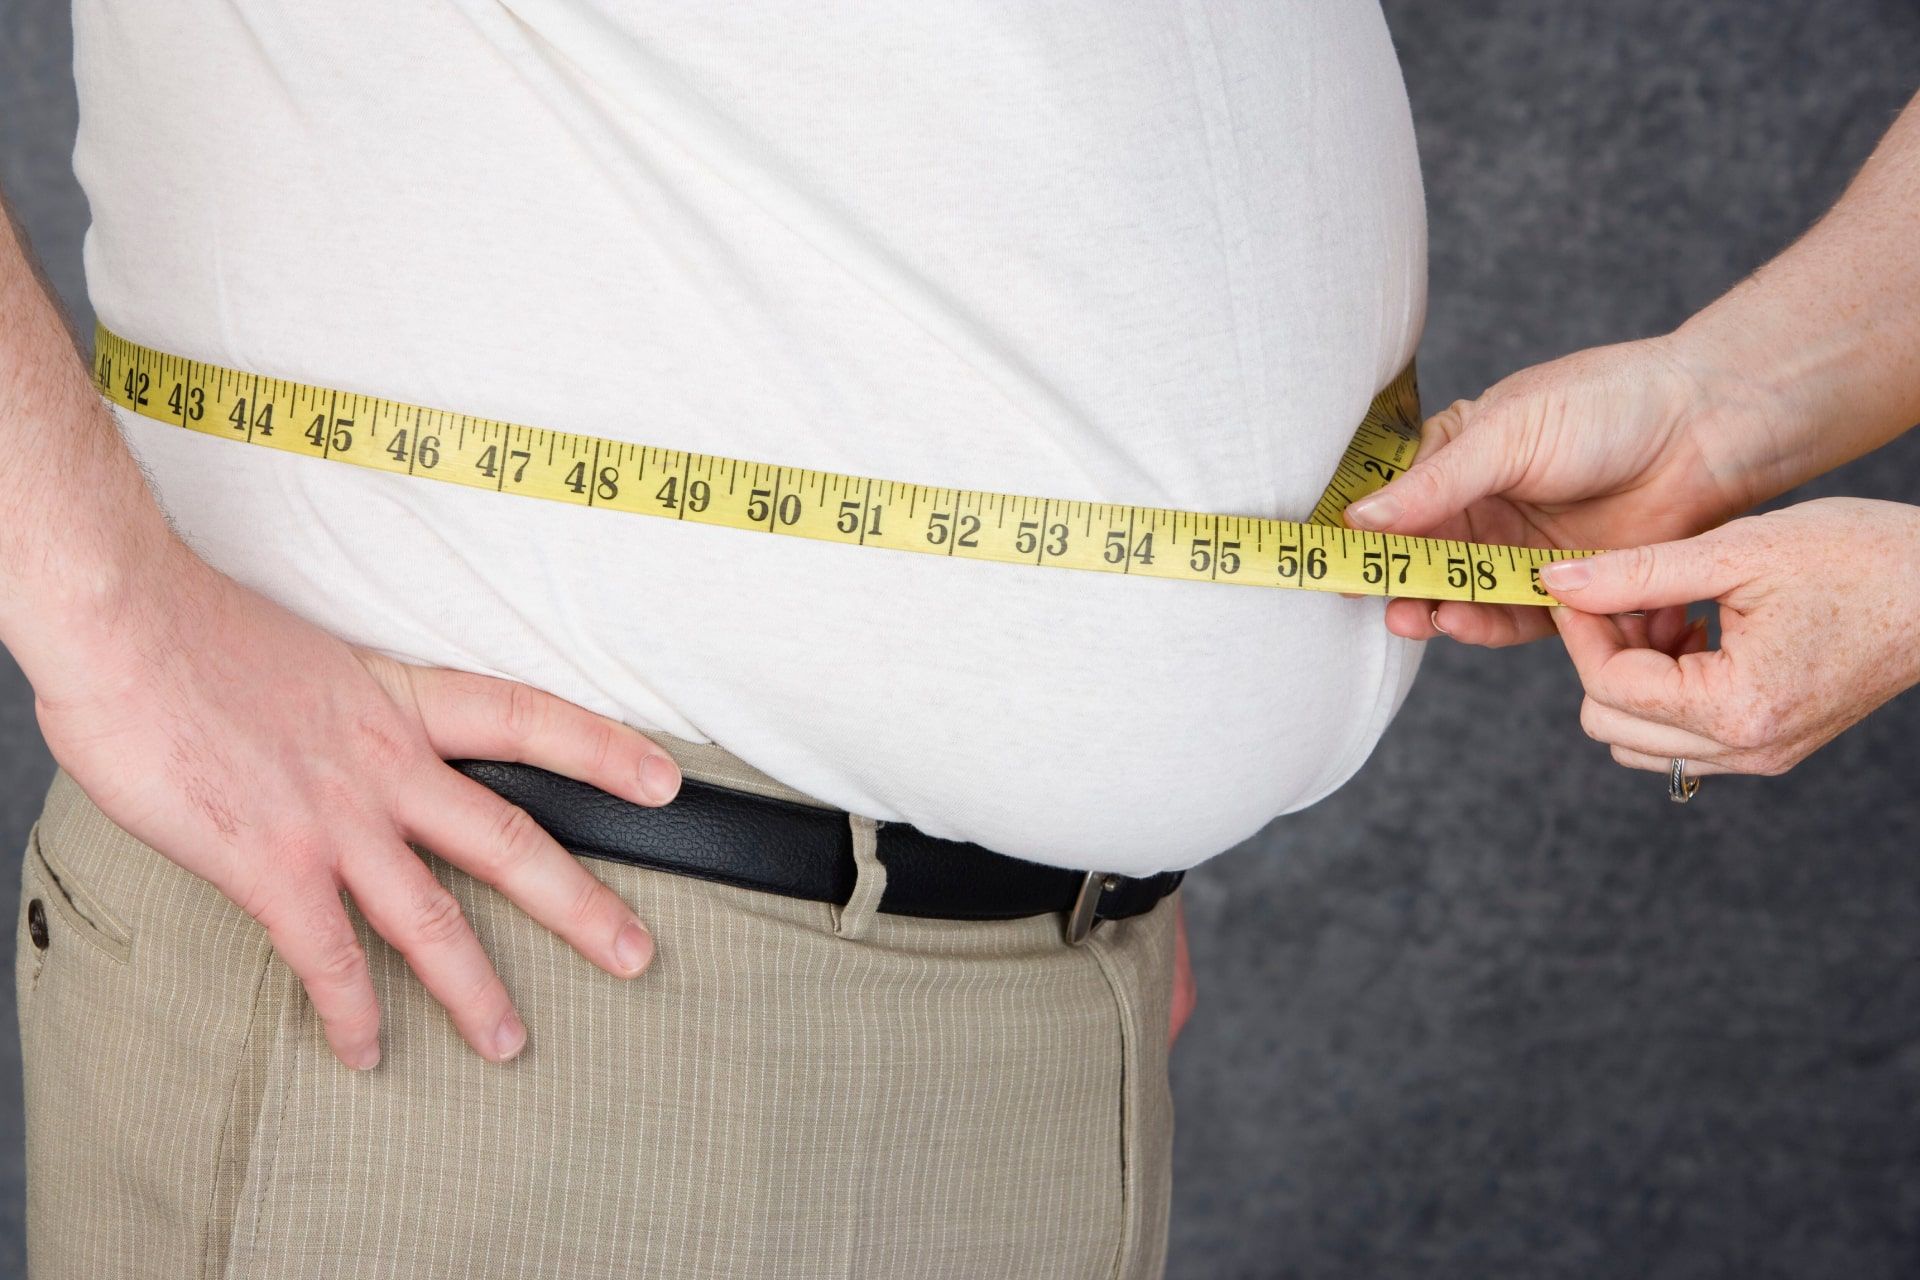 تجمع بیش از حد چربی در بدن و اندازه گیری دور شکم فردی که چاق است